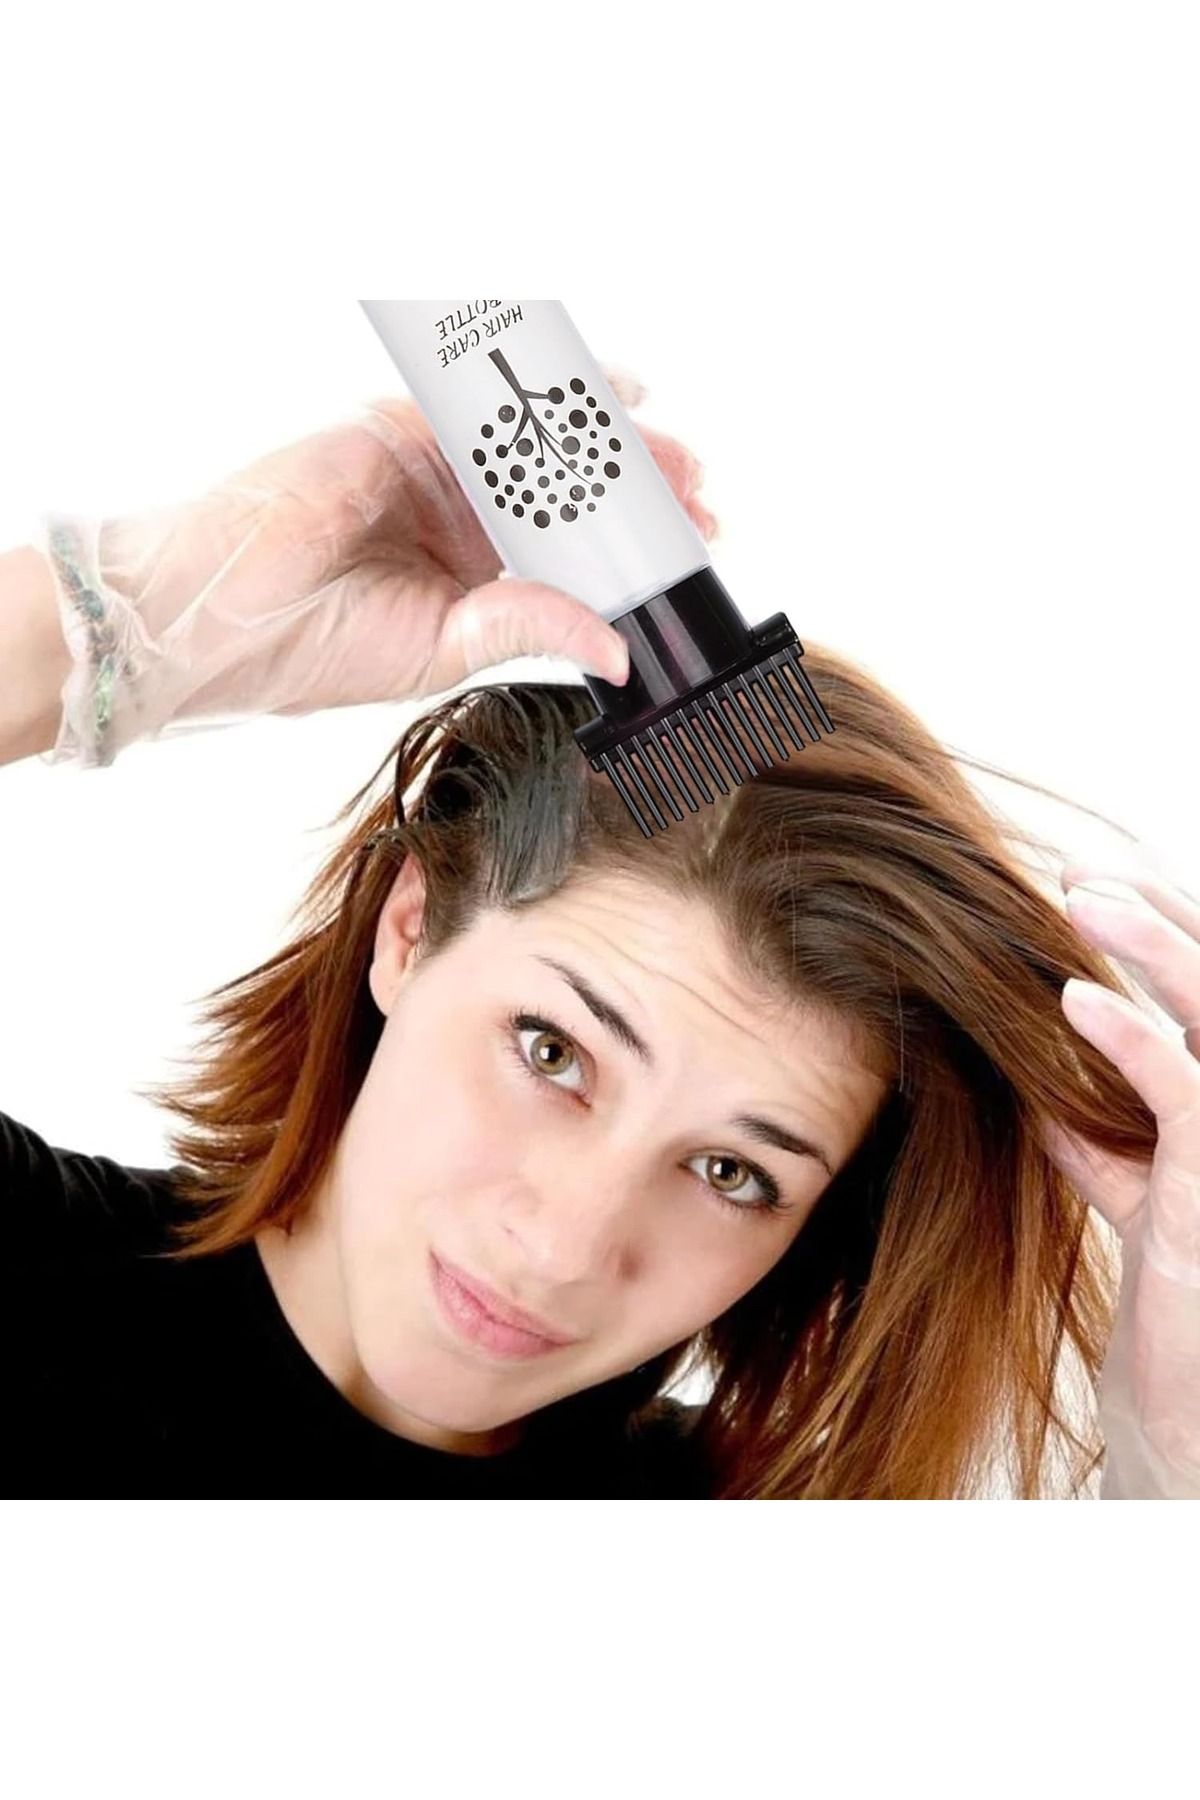 gaman Profesyonel ya da Evde Kullanıma Uygun Tarak Şeklinde Saç Bakım Yağı, Saç Boyama Aplikatör Şişesi